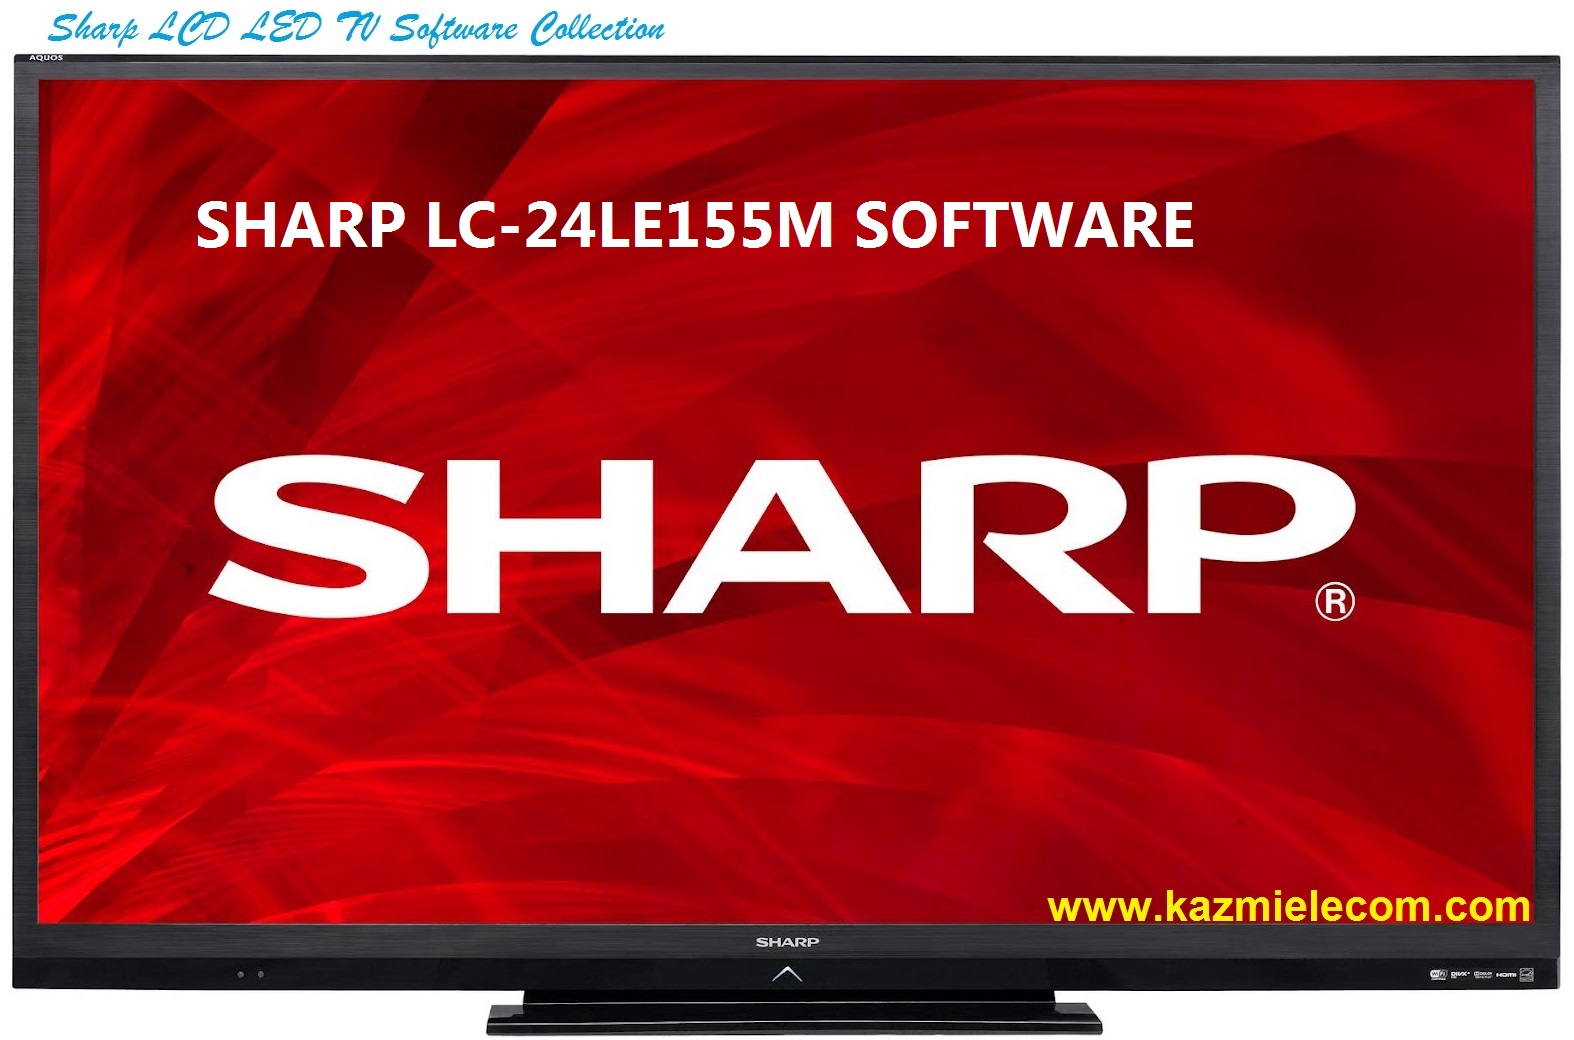 Sharp Lc-24Le155M